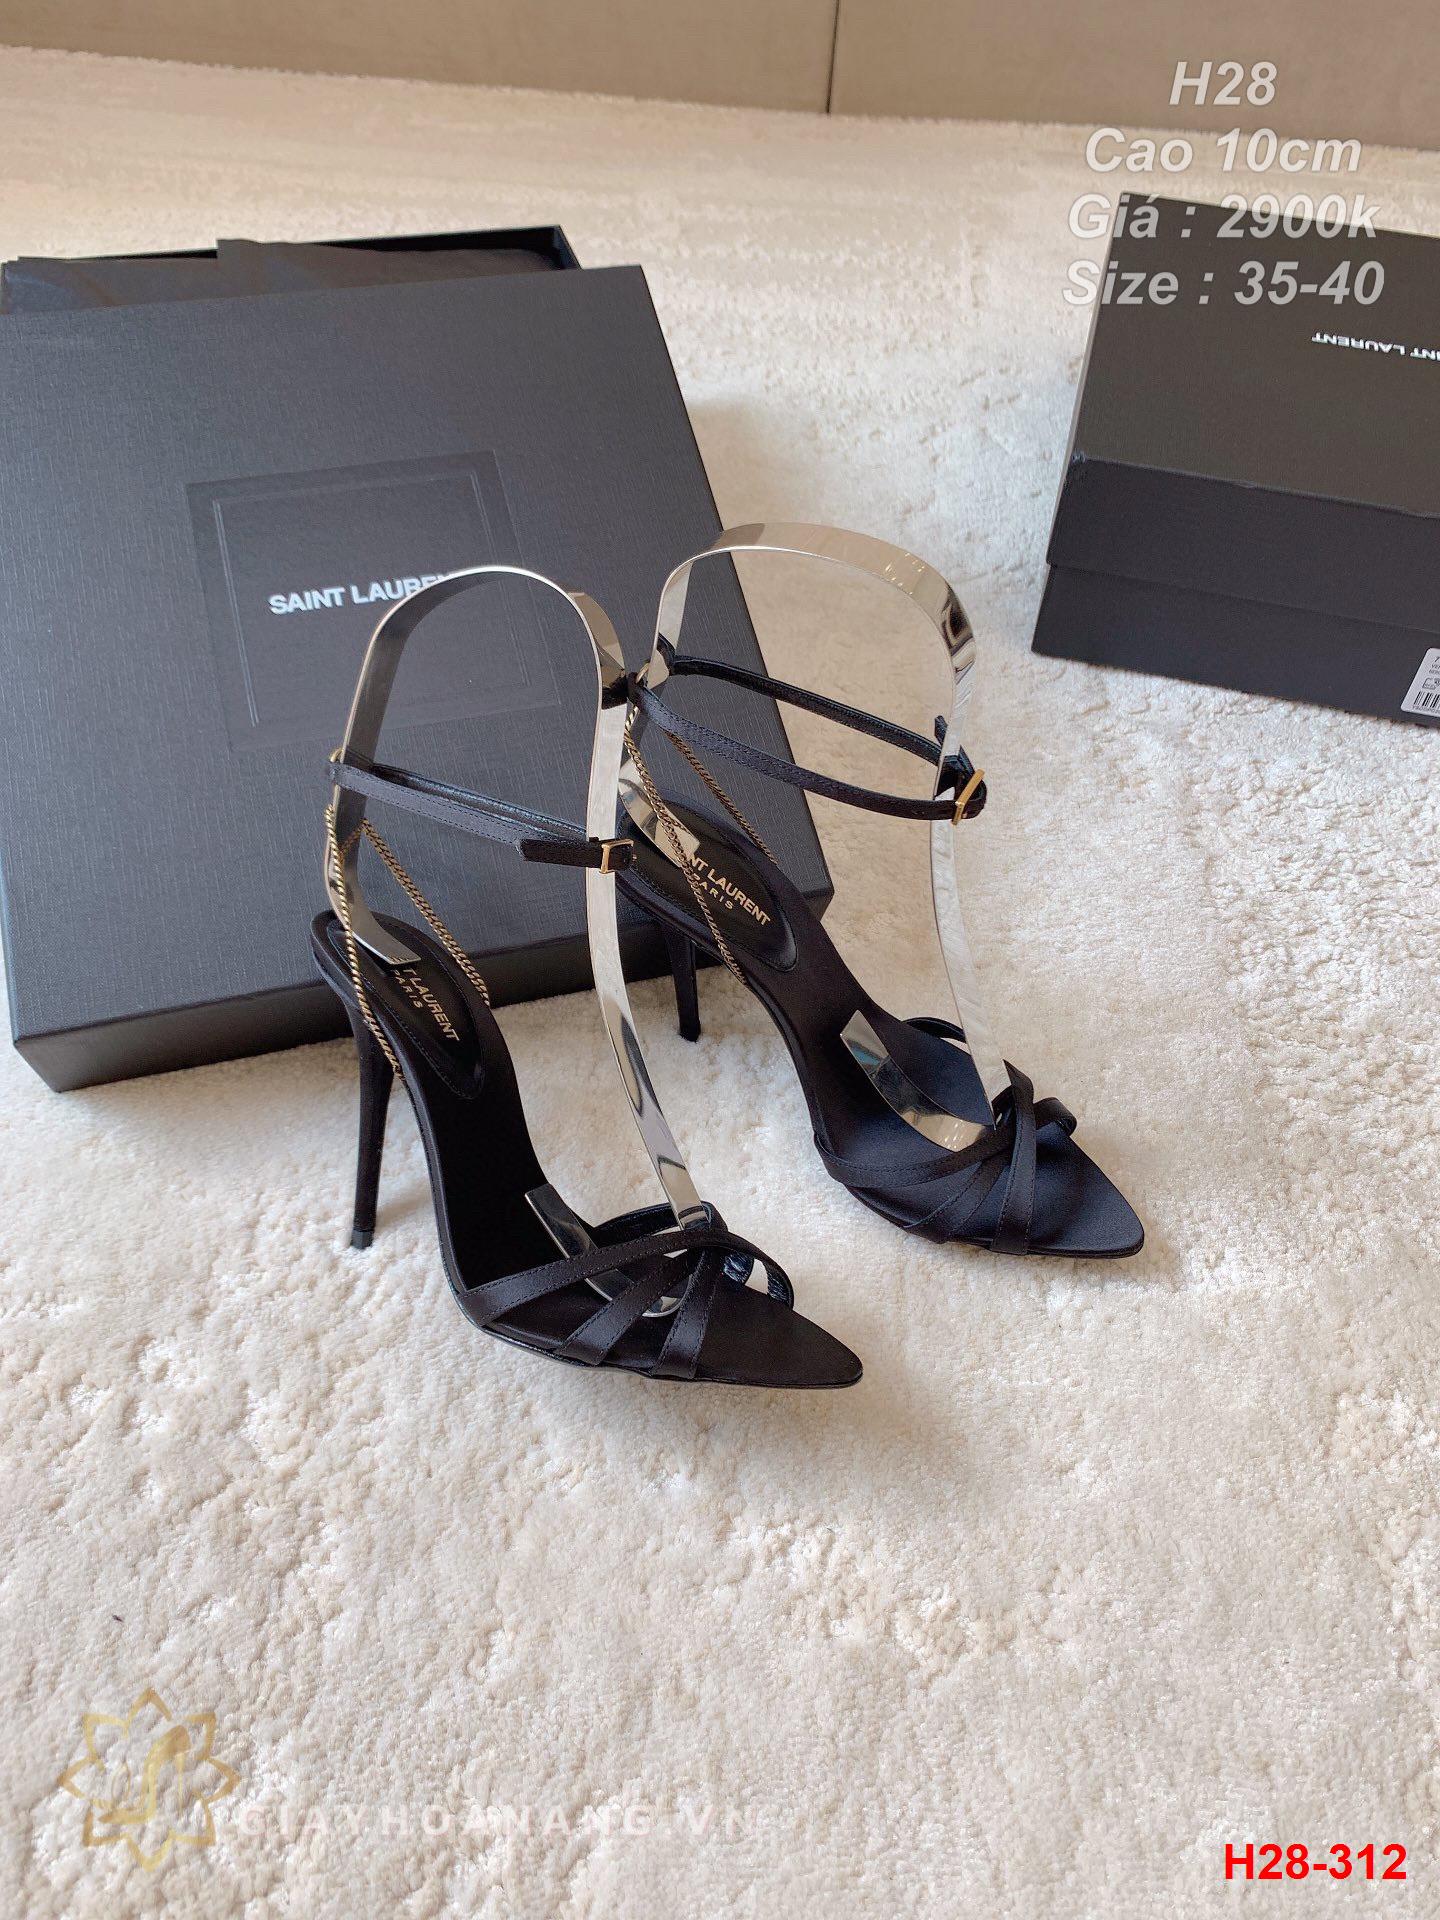 H28-312 Saint Laurent sandal cao 10cm siêu cấp